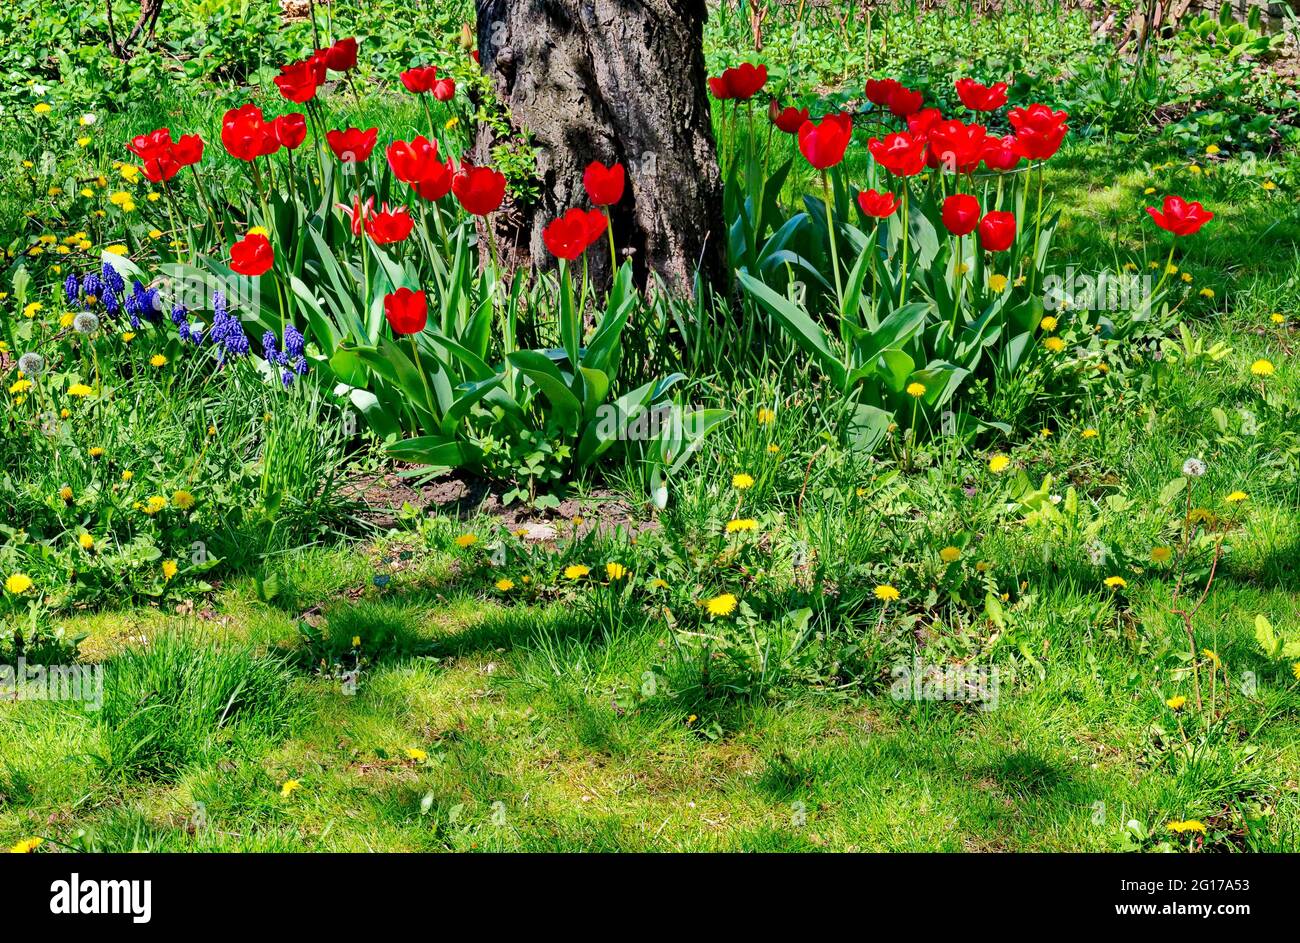 Frühlingsgarten mit frischem Gras, roten Tulpen und anderen blühenden Blumen, Sofia, Bulgarien Stockfoto